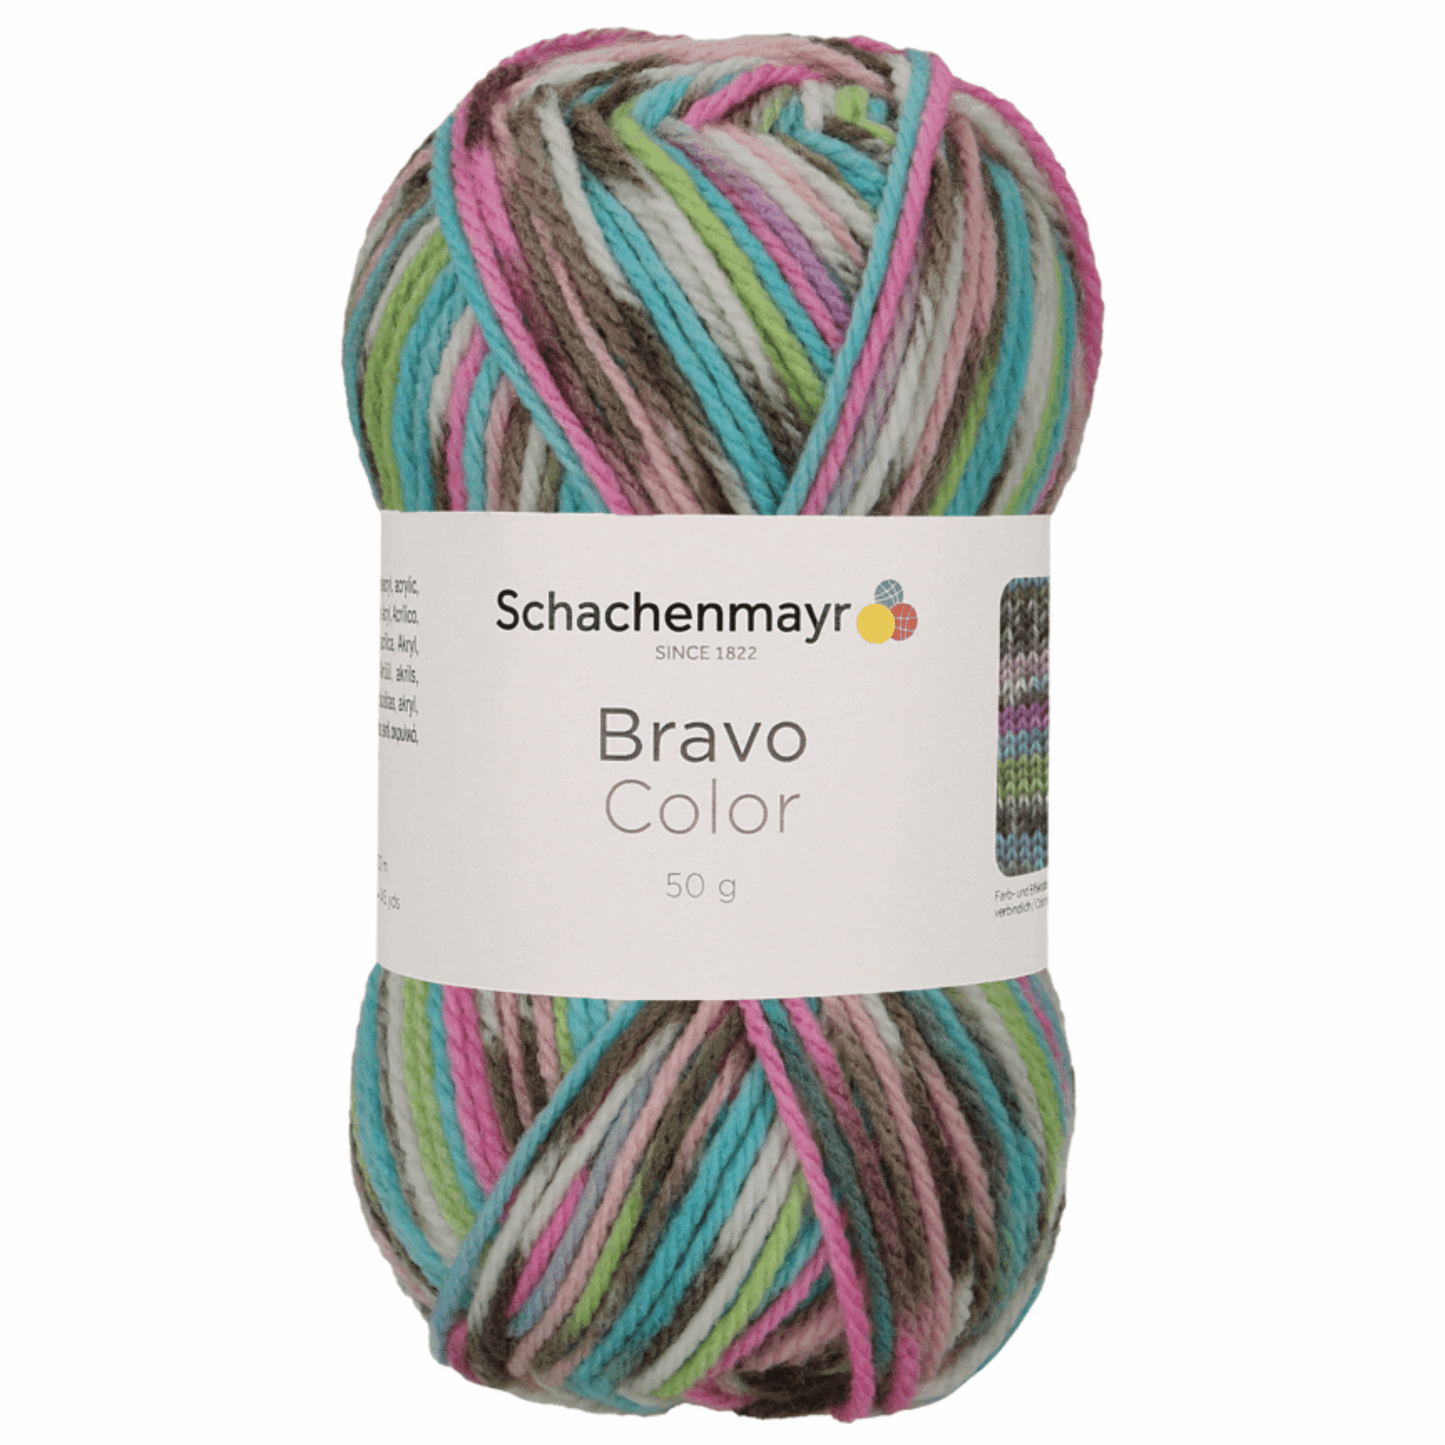 Schachenmayr Bravo50g, 90421, Farbe Minerals Jacquard 2083